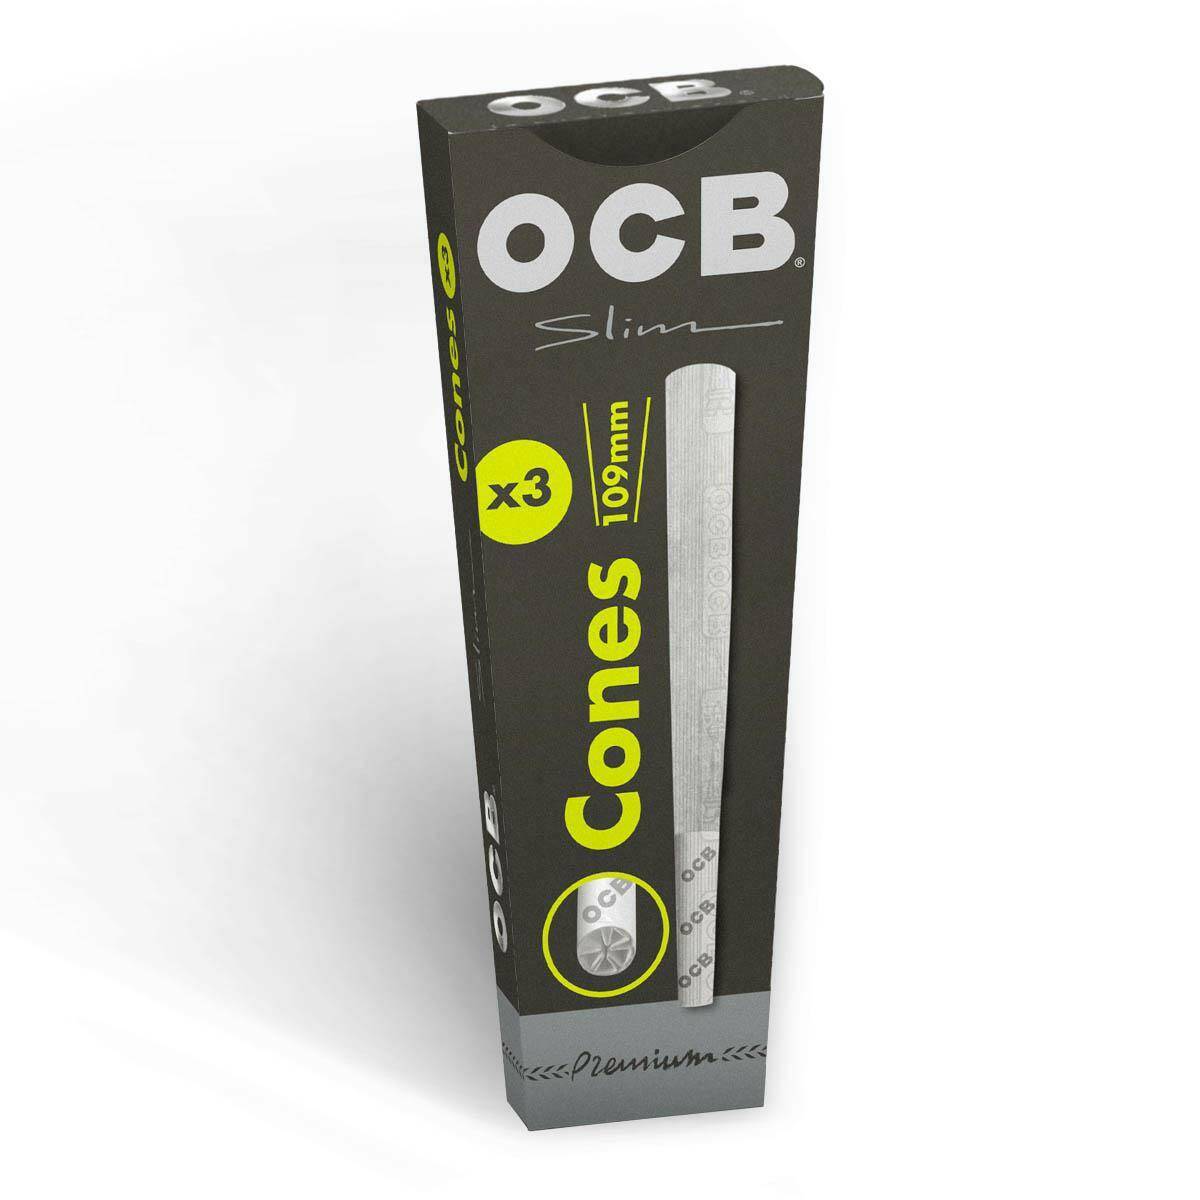 OCB Slim Premium Cones (x3)